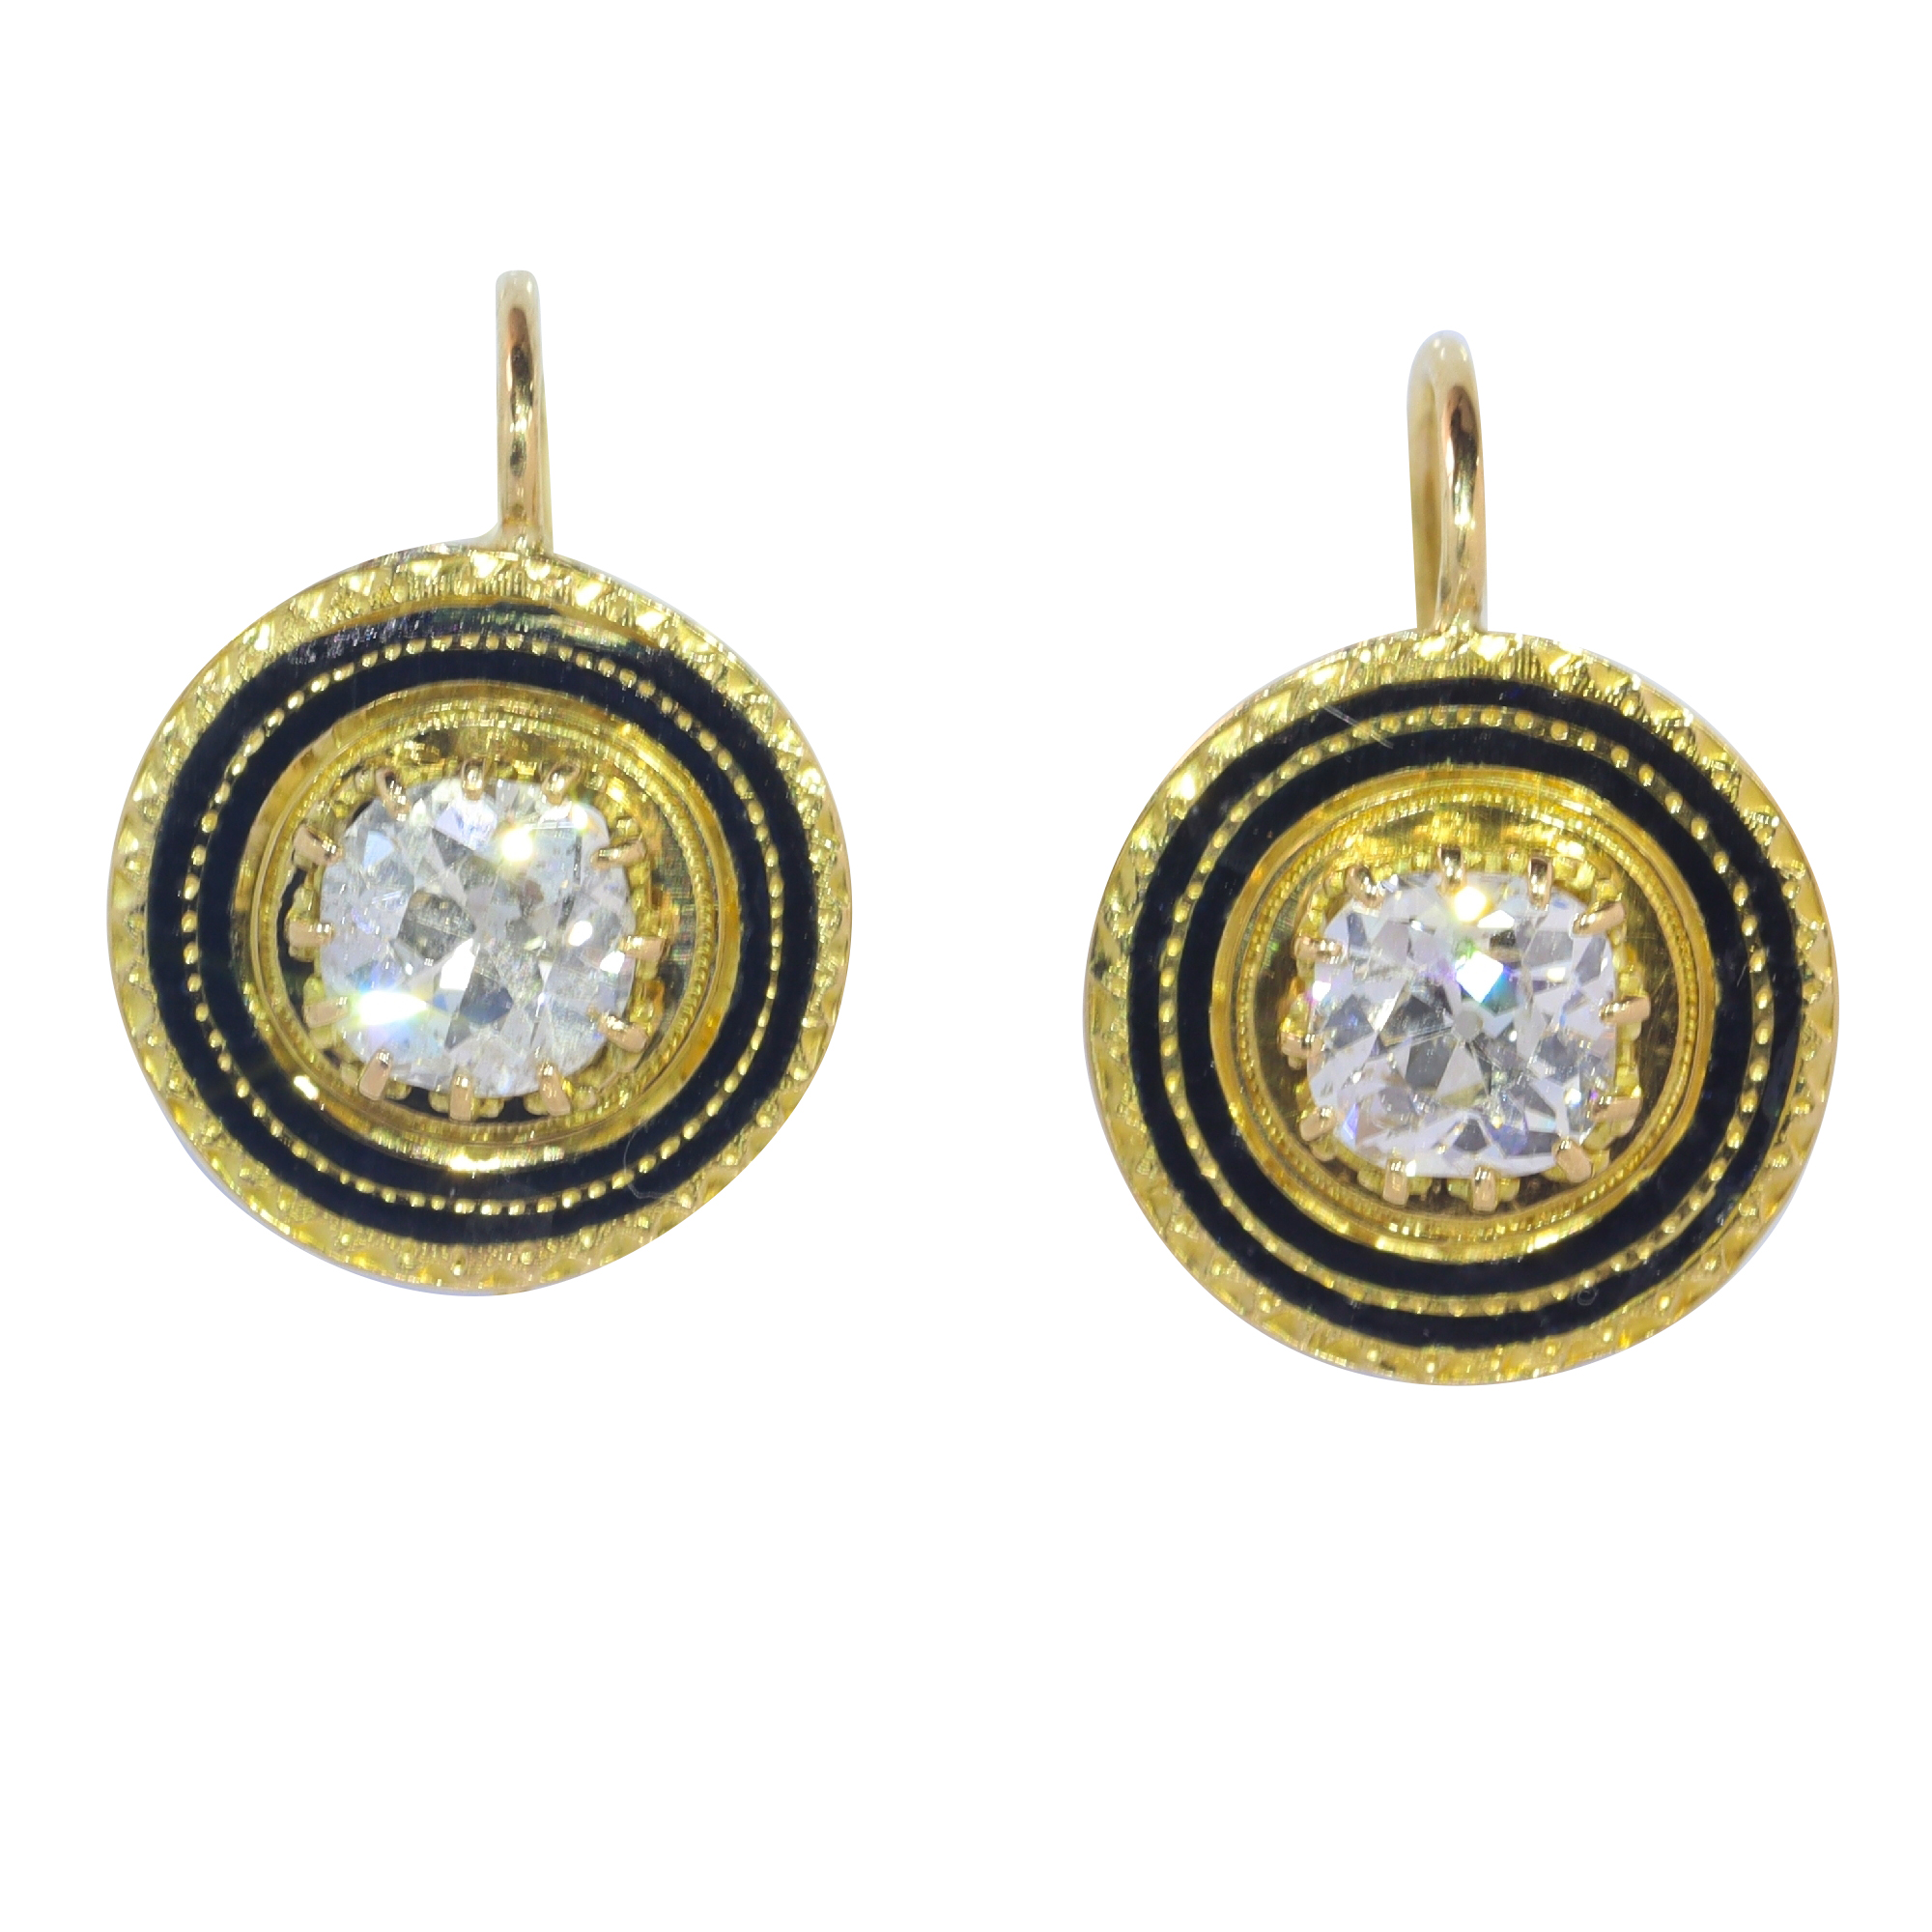 Glimpses of Grandeur: Circa 1830's Diamond Earrings